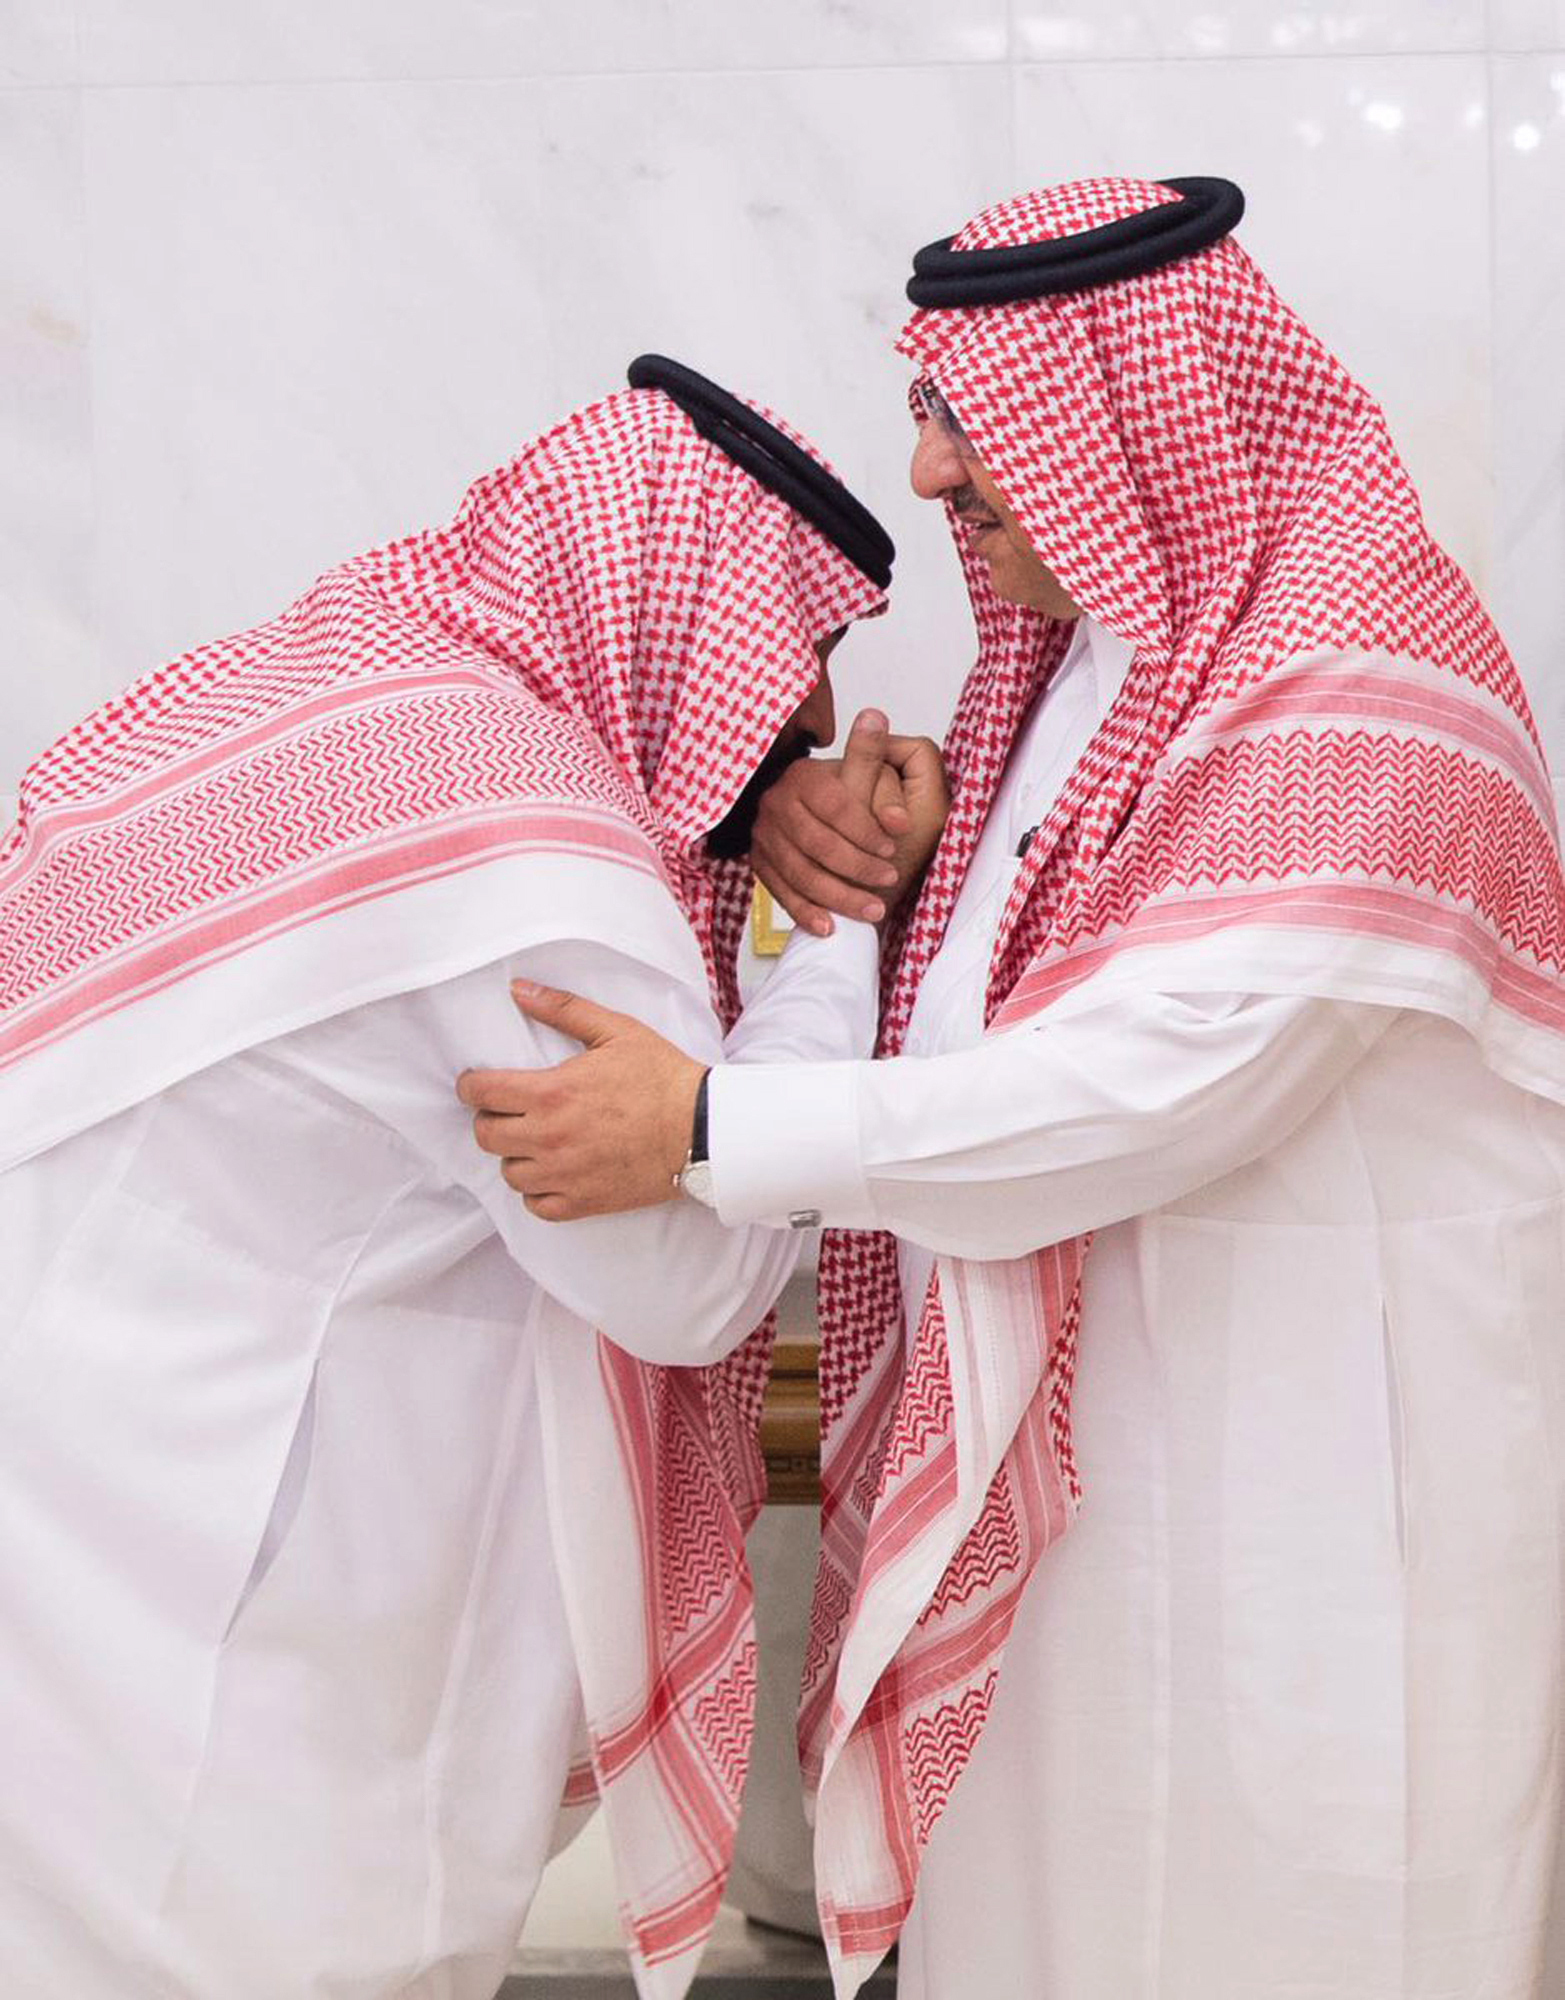 Новоизбраният престолонаследник принц Мохамед бин Салман /вляво/ целува ръка на уволнения от краля принц Мохамед бин Найеф